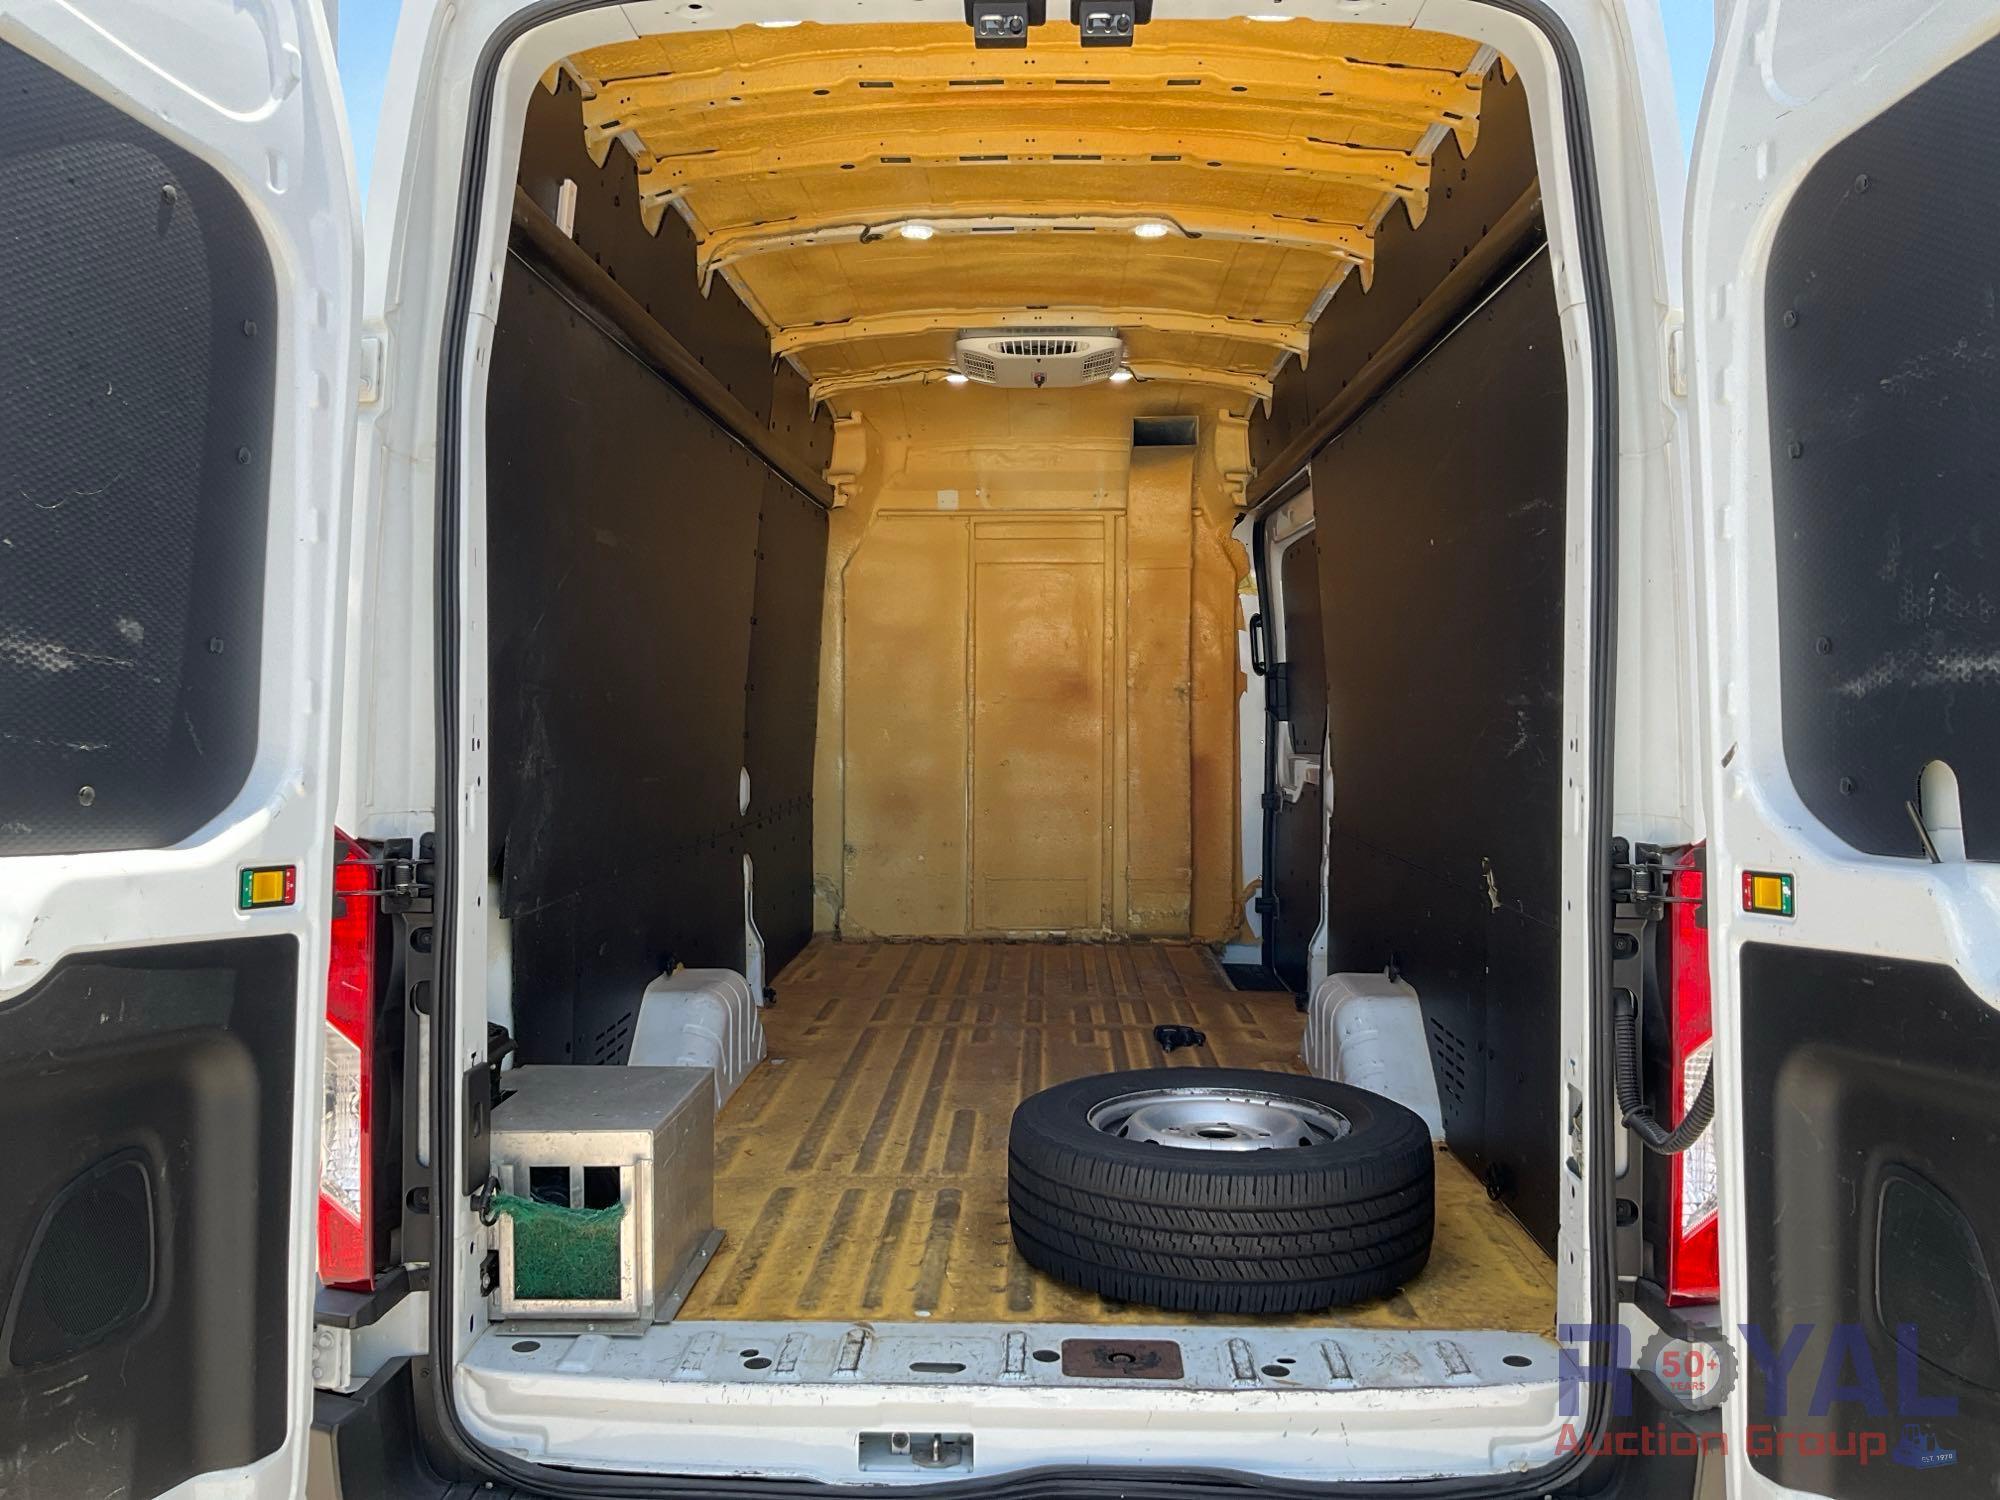 2019 Ford Transit Cargo Van